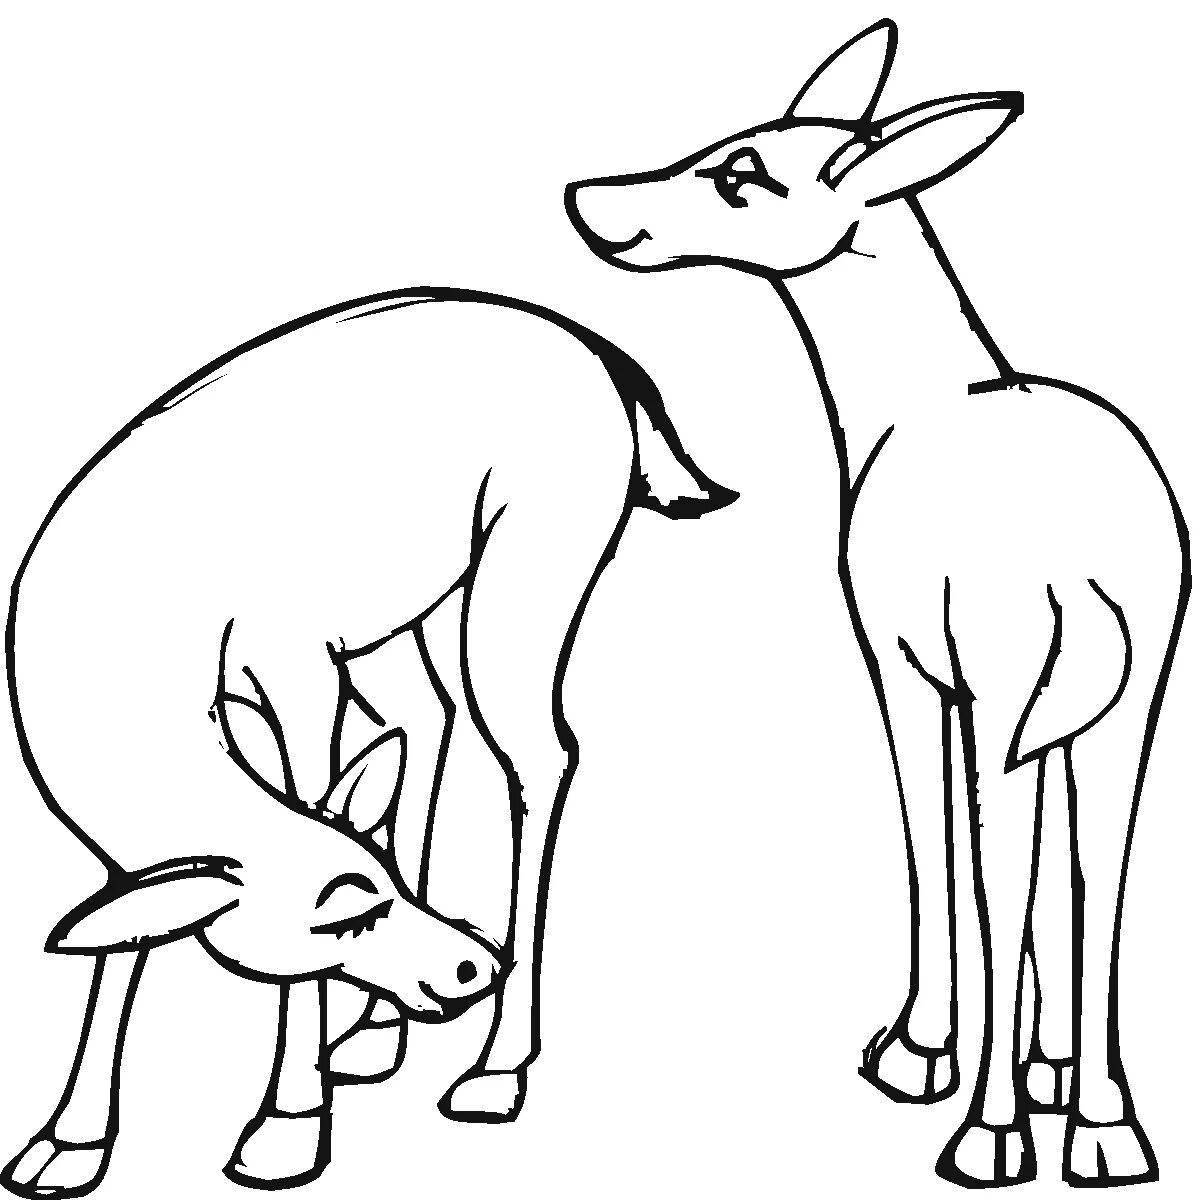 Joyful roe deer coloring for kids